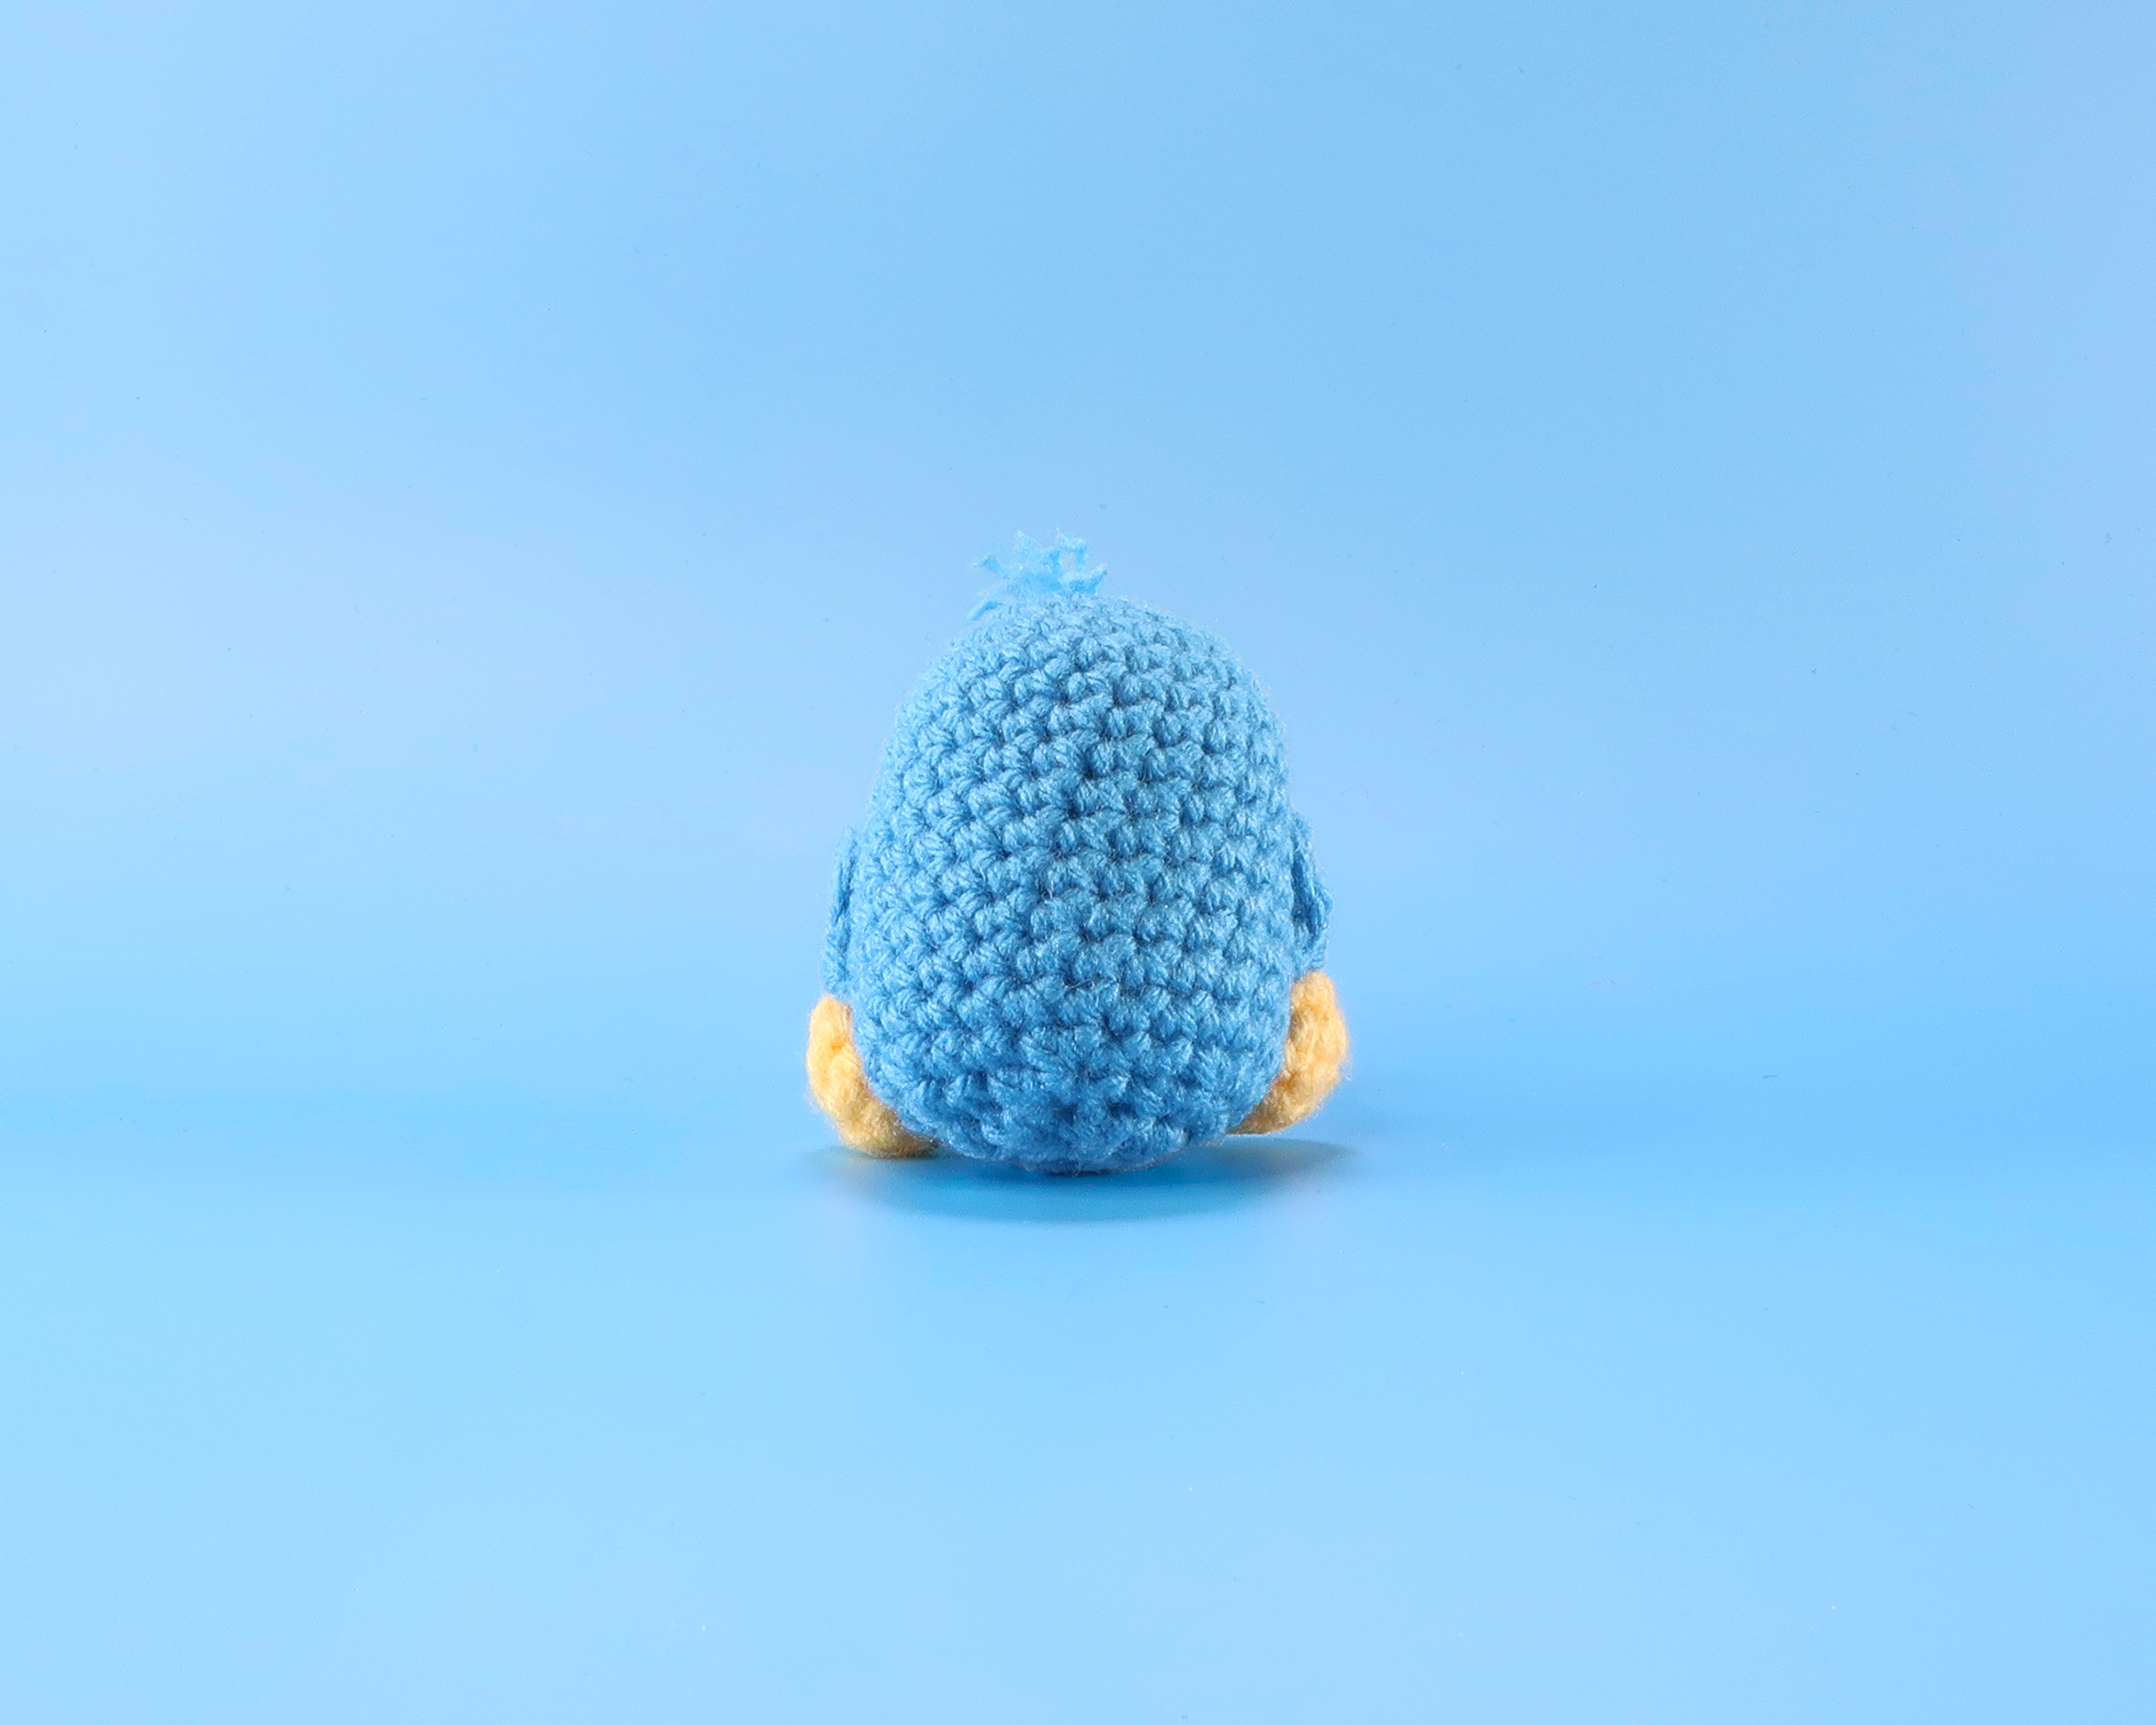 Penguin Crochet Kit & Pattern